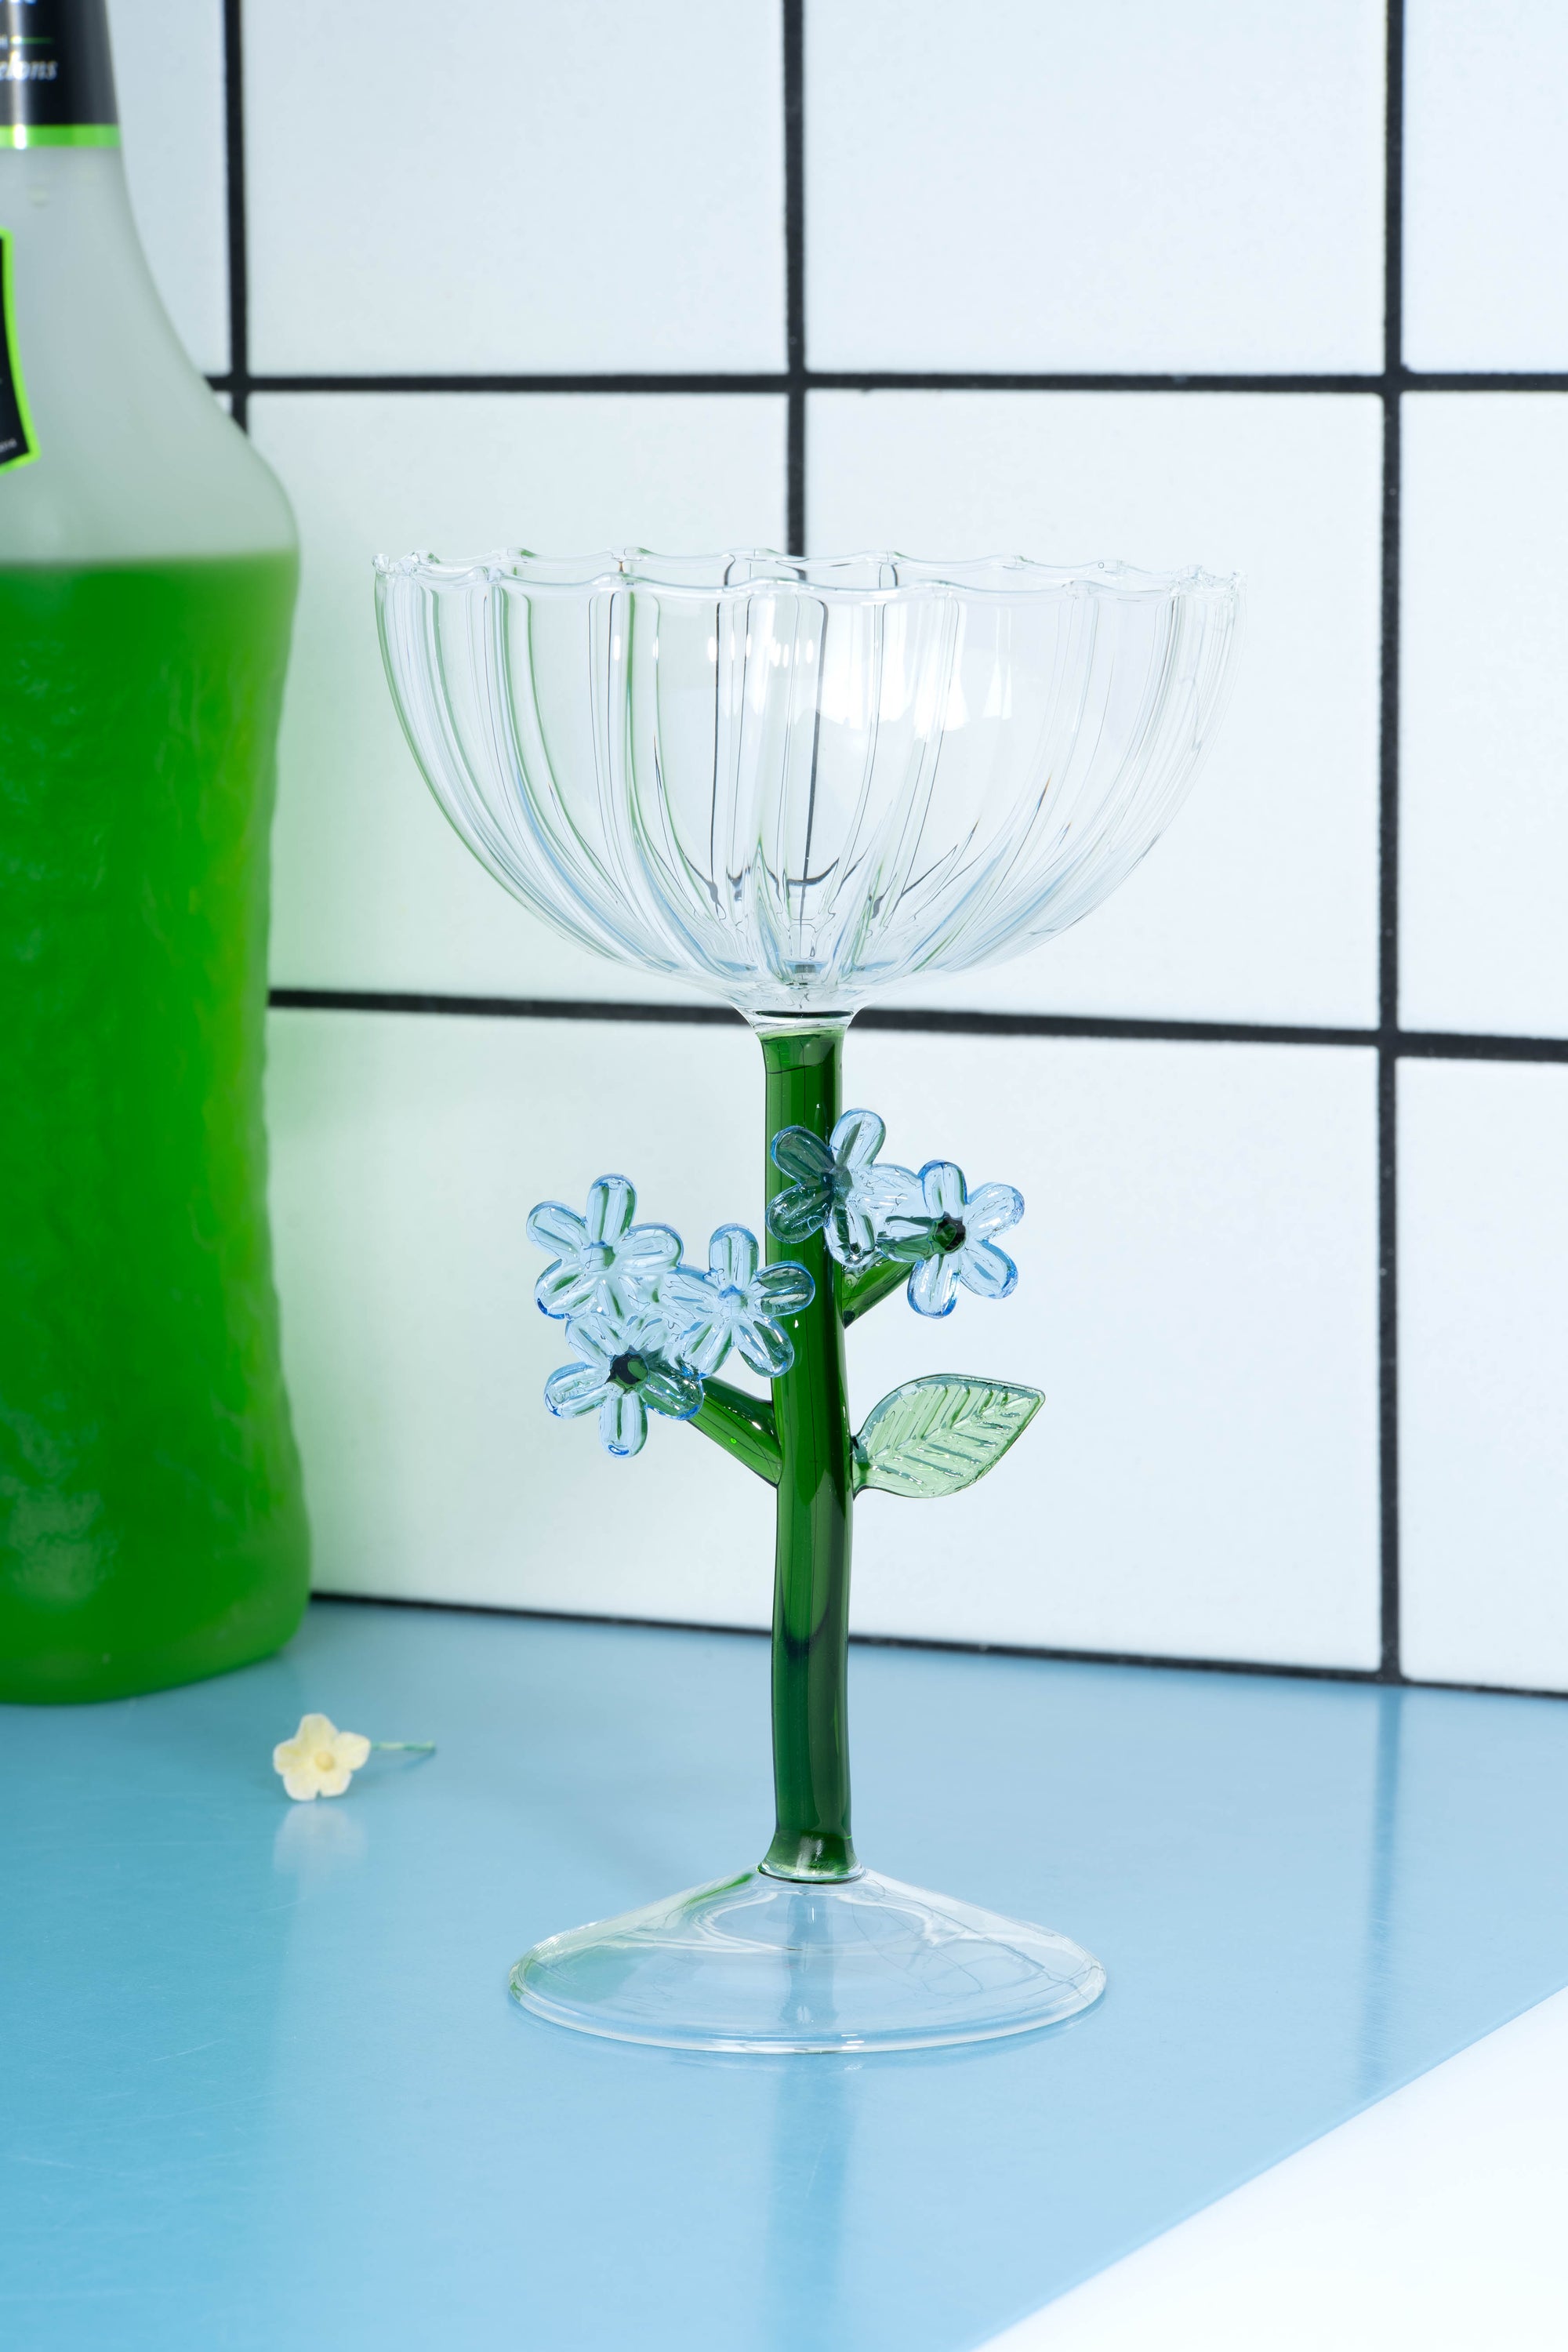 Optical Clear Wine Glass